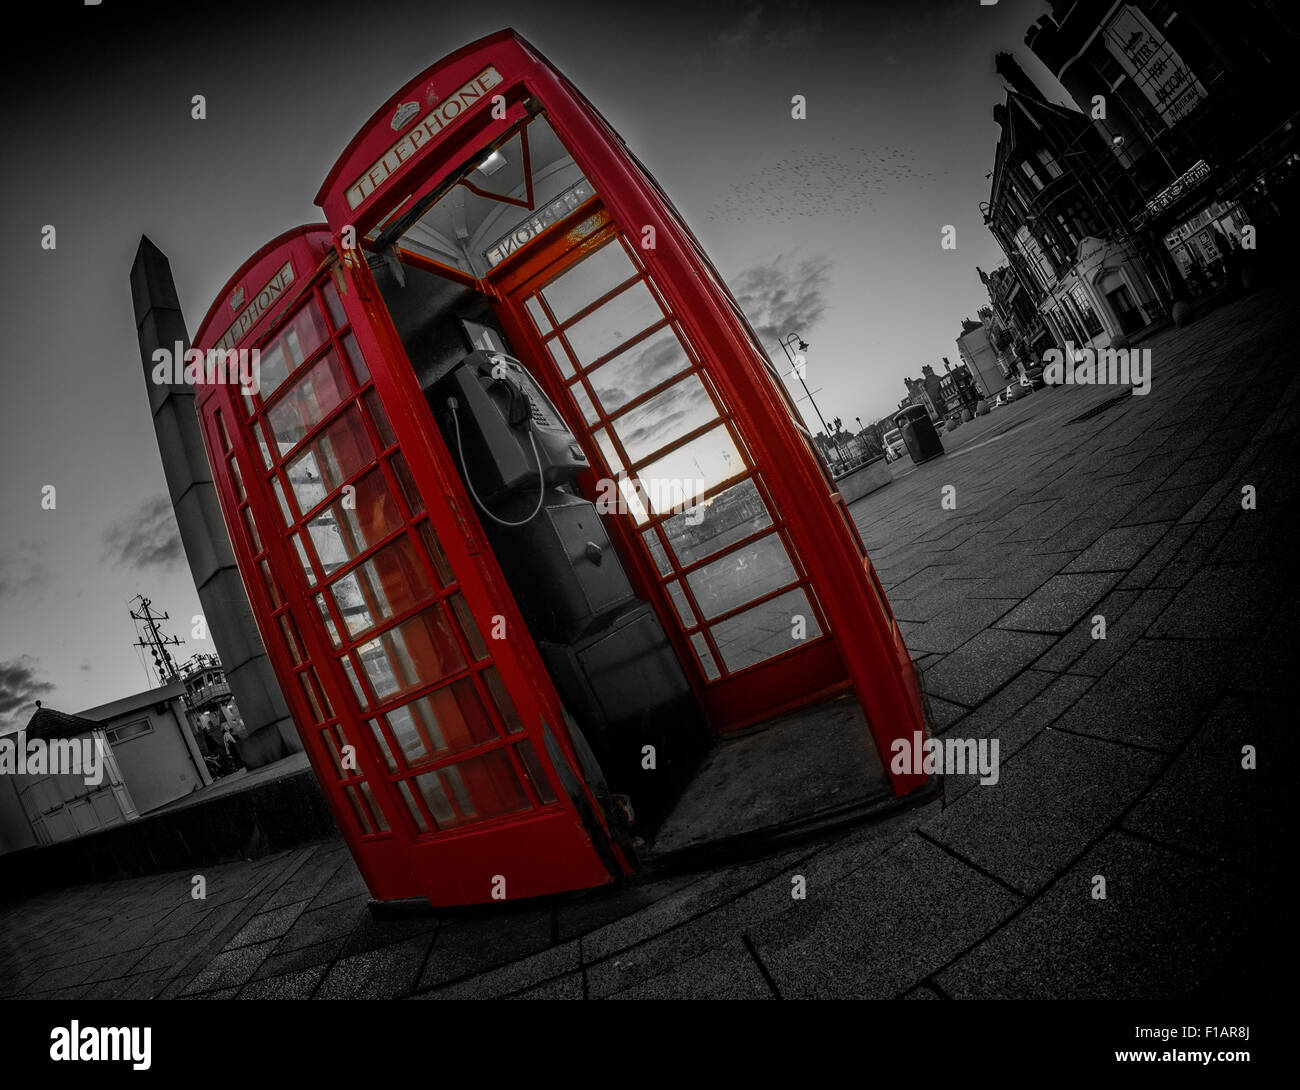 2 cabinas de teléfono rojo en Ramsgate Reino Unido utilizando color selectivo Foto de stock